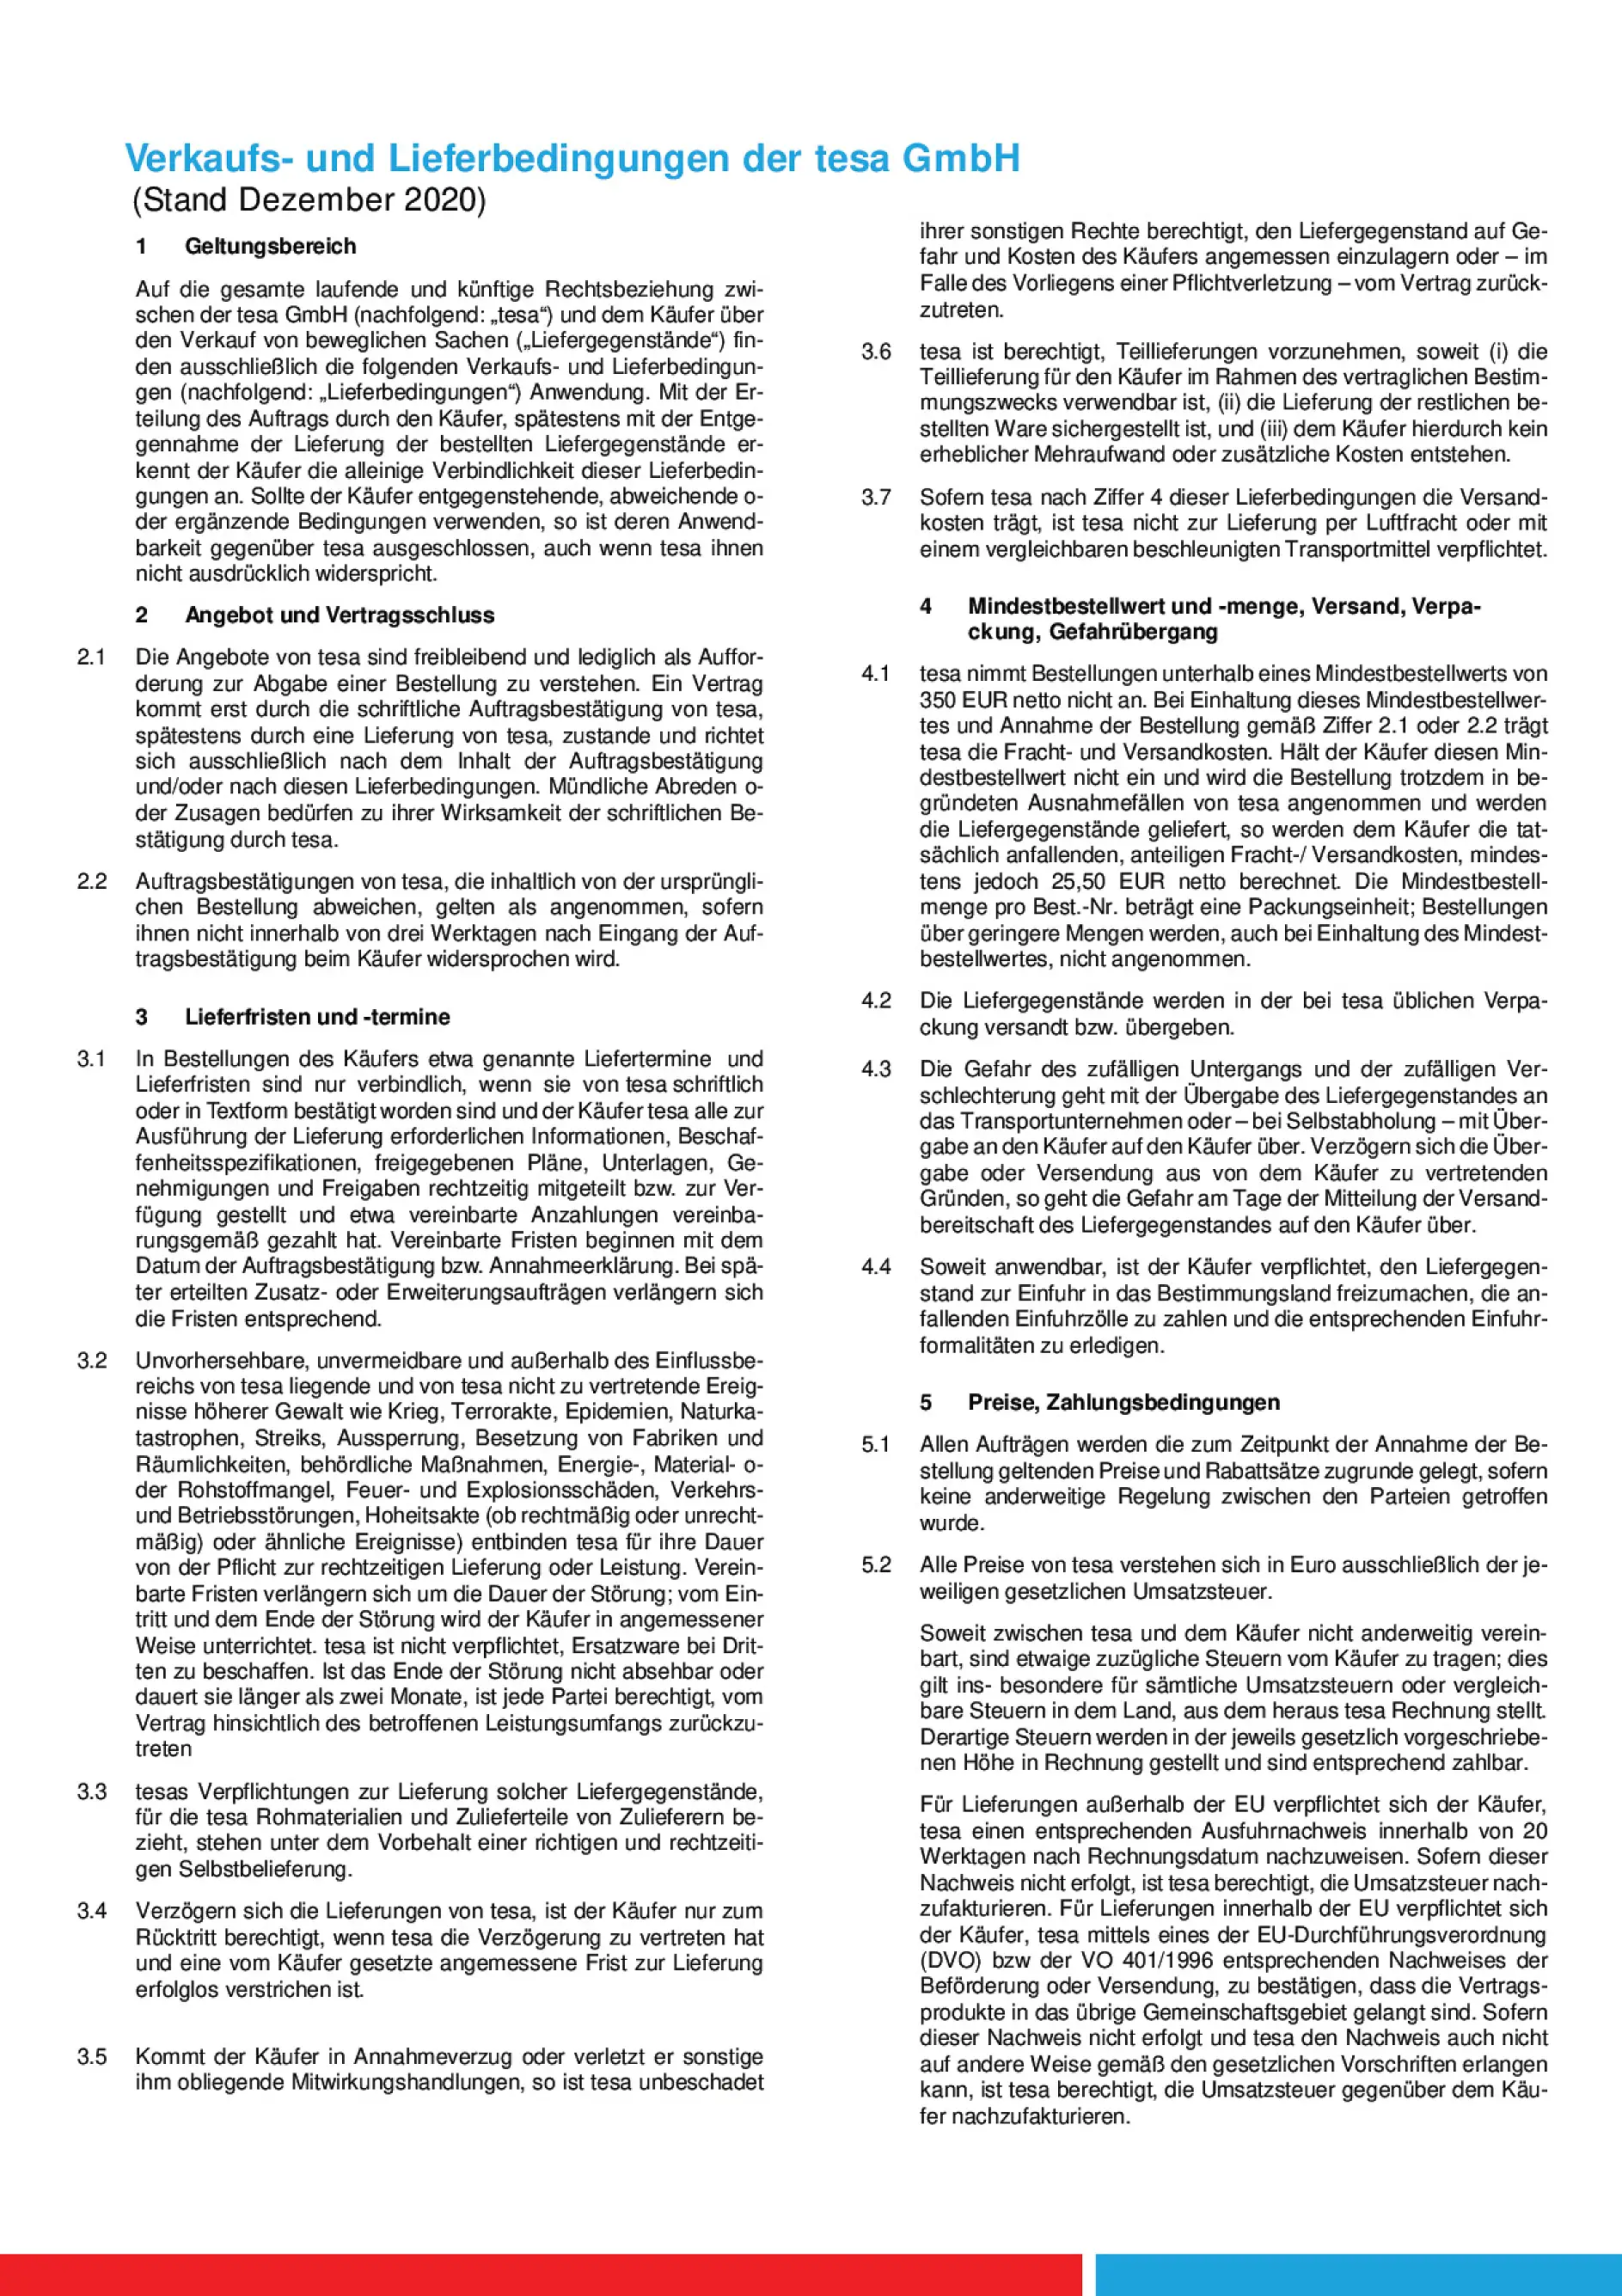 Verkaufs-und Lieferbedingungen der tesa GmbH_Dezember2020